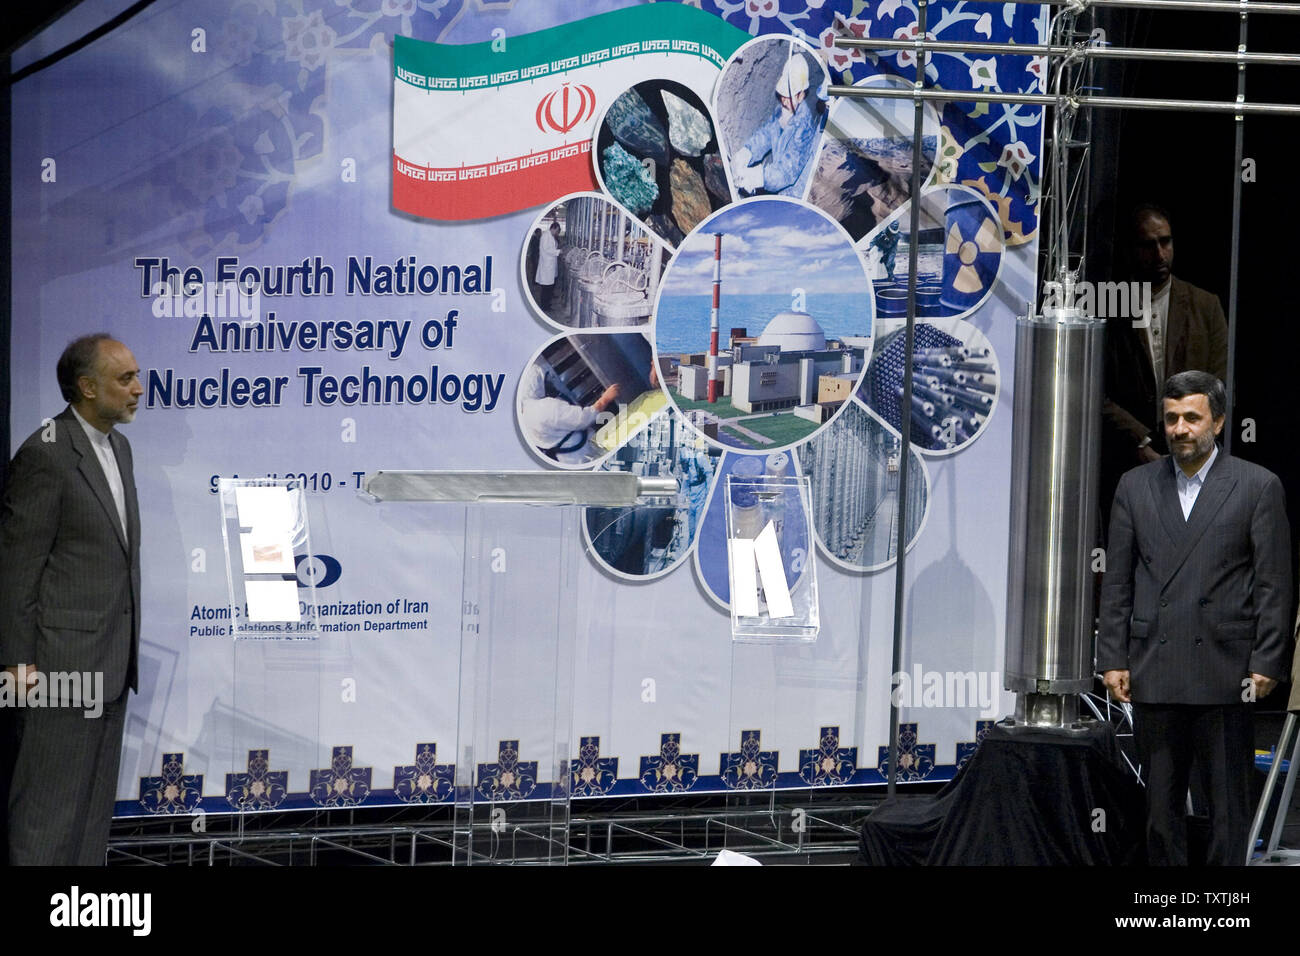 Der iranische Präsident Mahmud Ahmadinedschad (R) und der iranischen Atomenergiebehörde Kopf Ali-Akbar Salehi eine dritte Generation von im Inland gebaut Zentrifugen als Teil der Programm zur Anreicherung von Uran des Landes vorstellen und Markierung der 4. Nationalen Jahrestag der Kerntechnik in Teheran, Iran, dem 9. April 2010. UPI/Maryam Rahmanian. Stockfoto